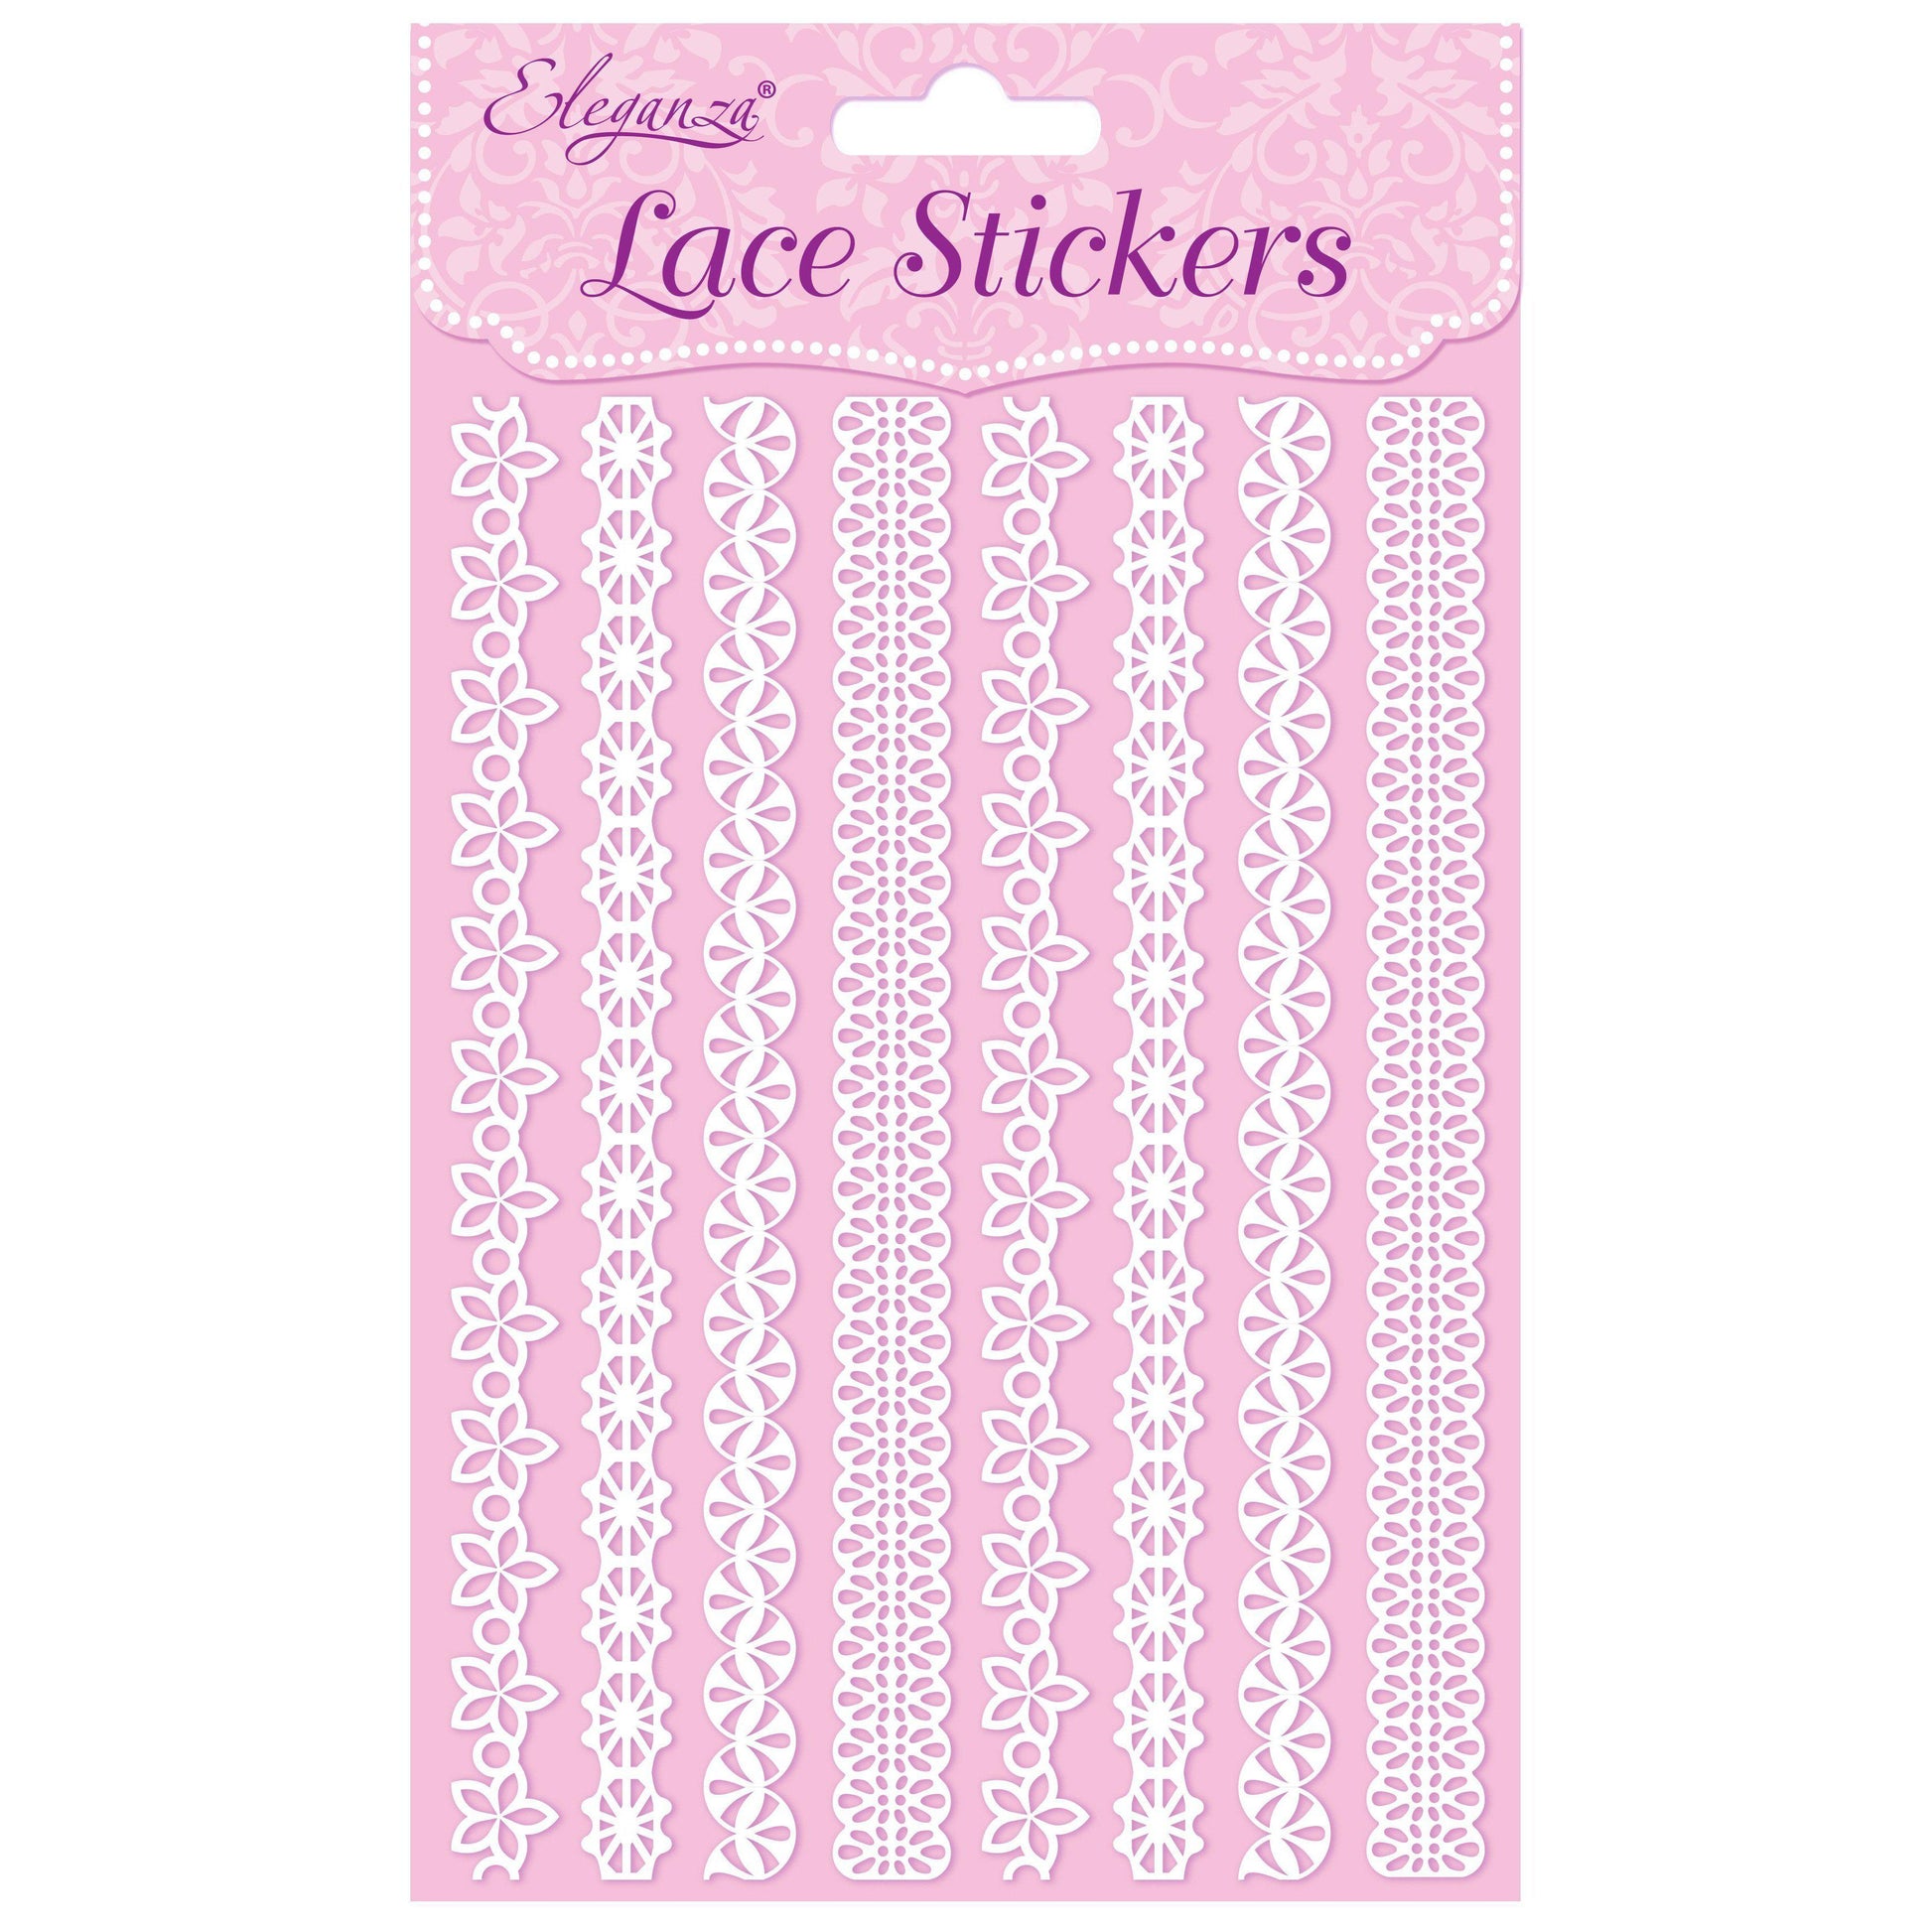 Eleganza Self-Adhesive Lace Boarder Stickers - C-The Creative Bride